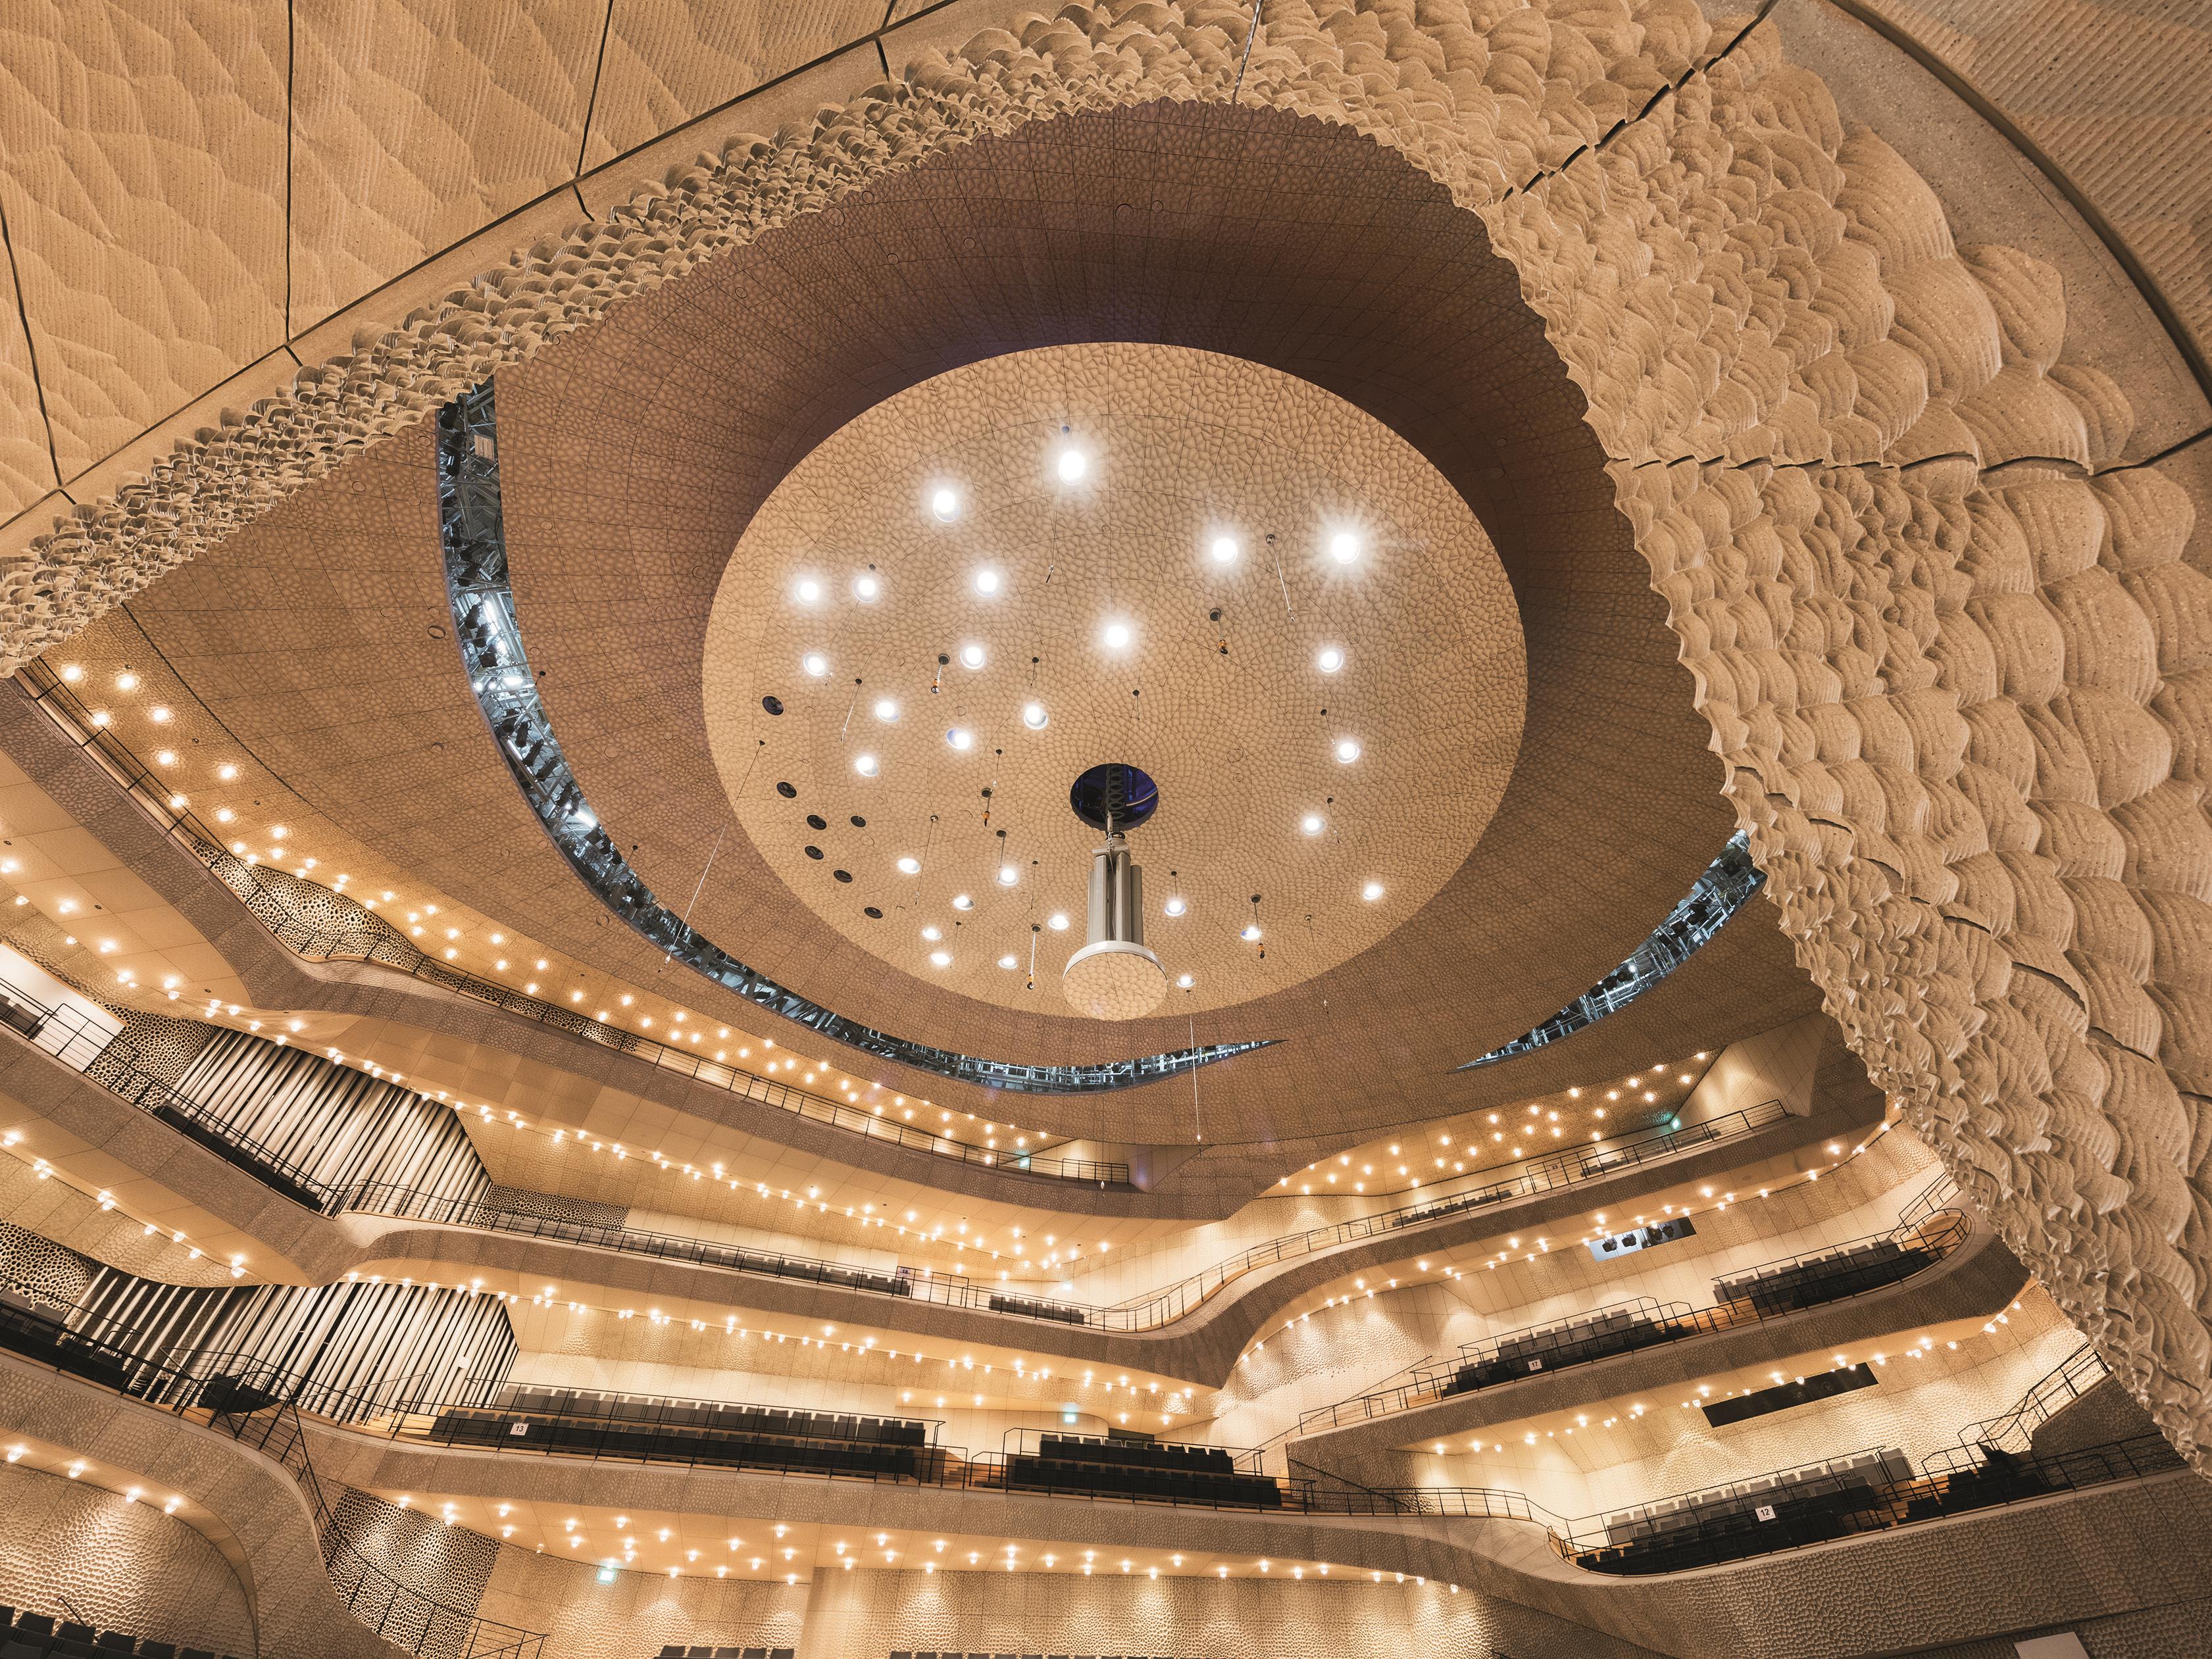 Zumtobel hat für die Beleuchtung der Elbphilharmonie im Hamburger Hafen zahlreiche Sonderleuchten entwickelt, darunter 1200 mundgeblasene Glaskugelleuchten für den Konzertsaal.